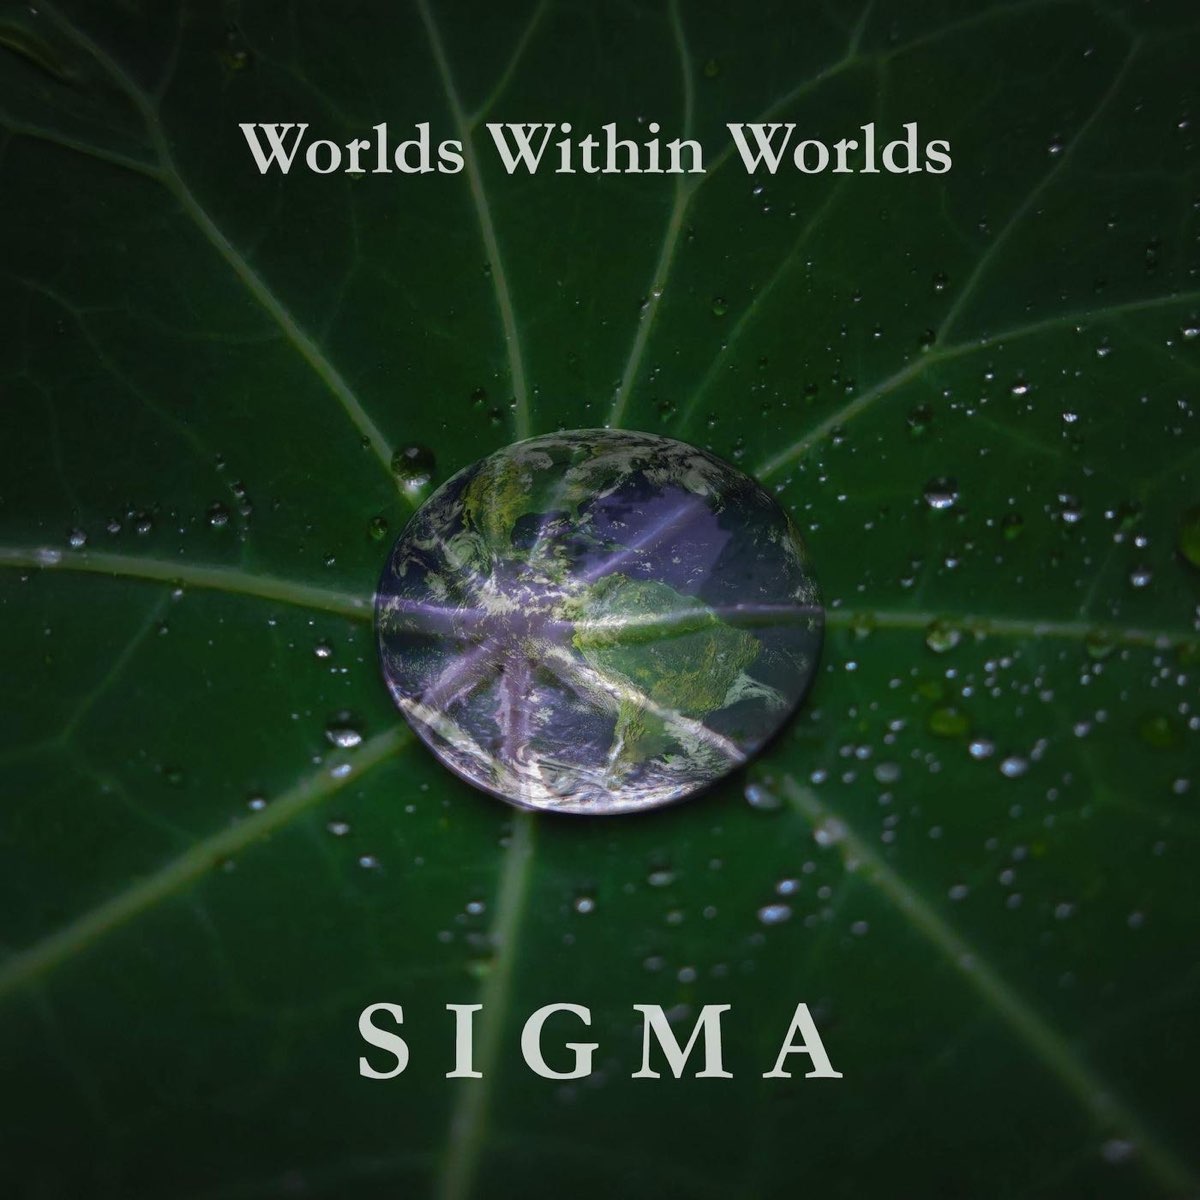 Бай бай сигма песня. Worlds within Worlds. Sigma Touch. Within the Worlds песня видео. Сигма слушает музыку.